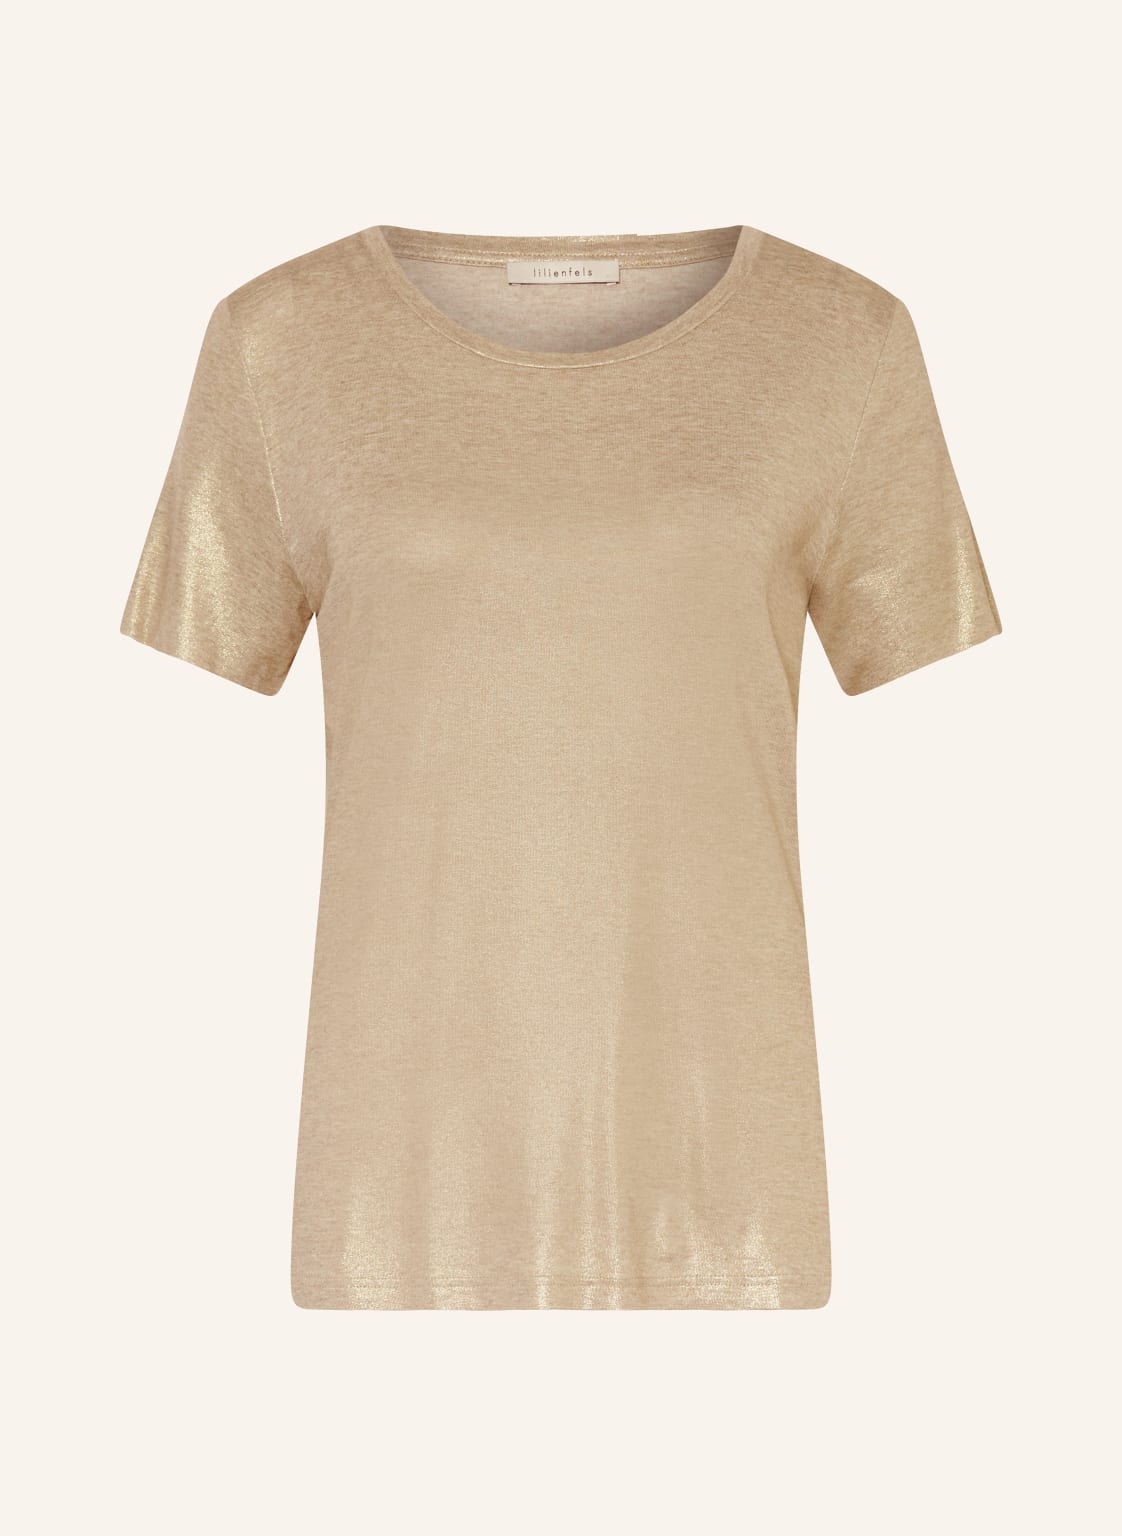 Lilienfels T-Shirt Mit Glitzergarn gold von lilienfels